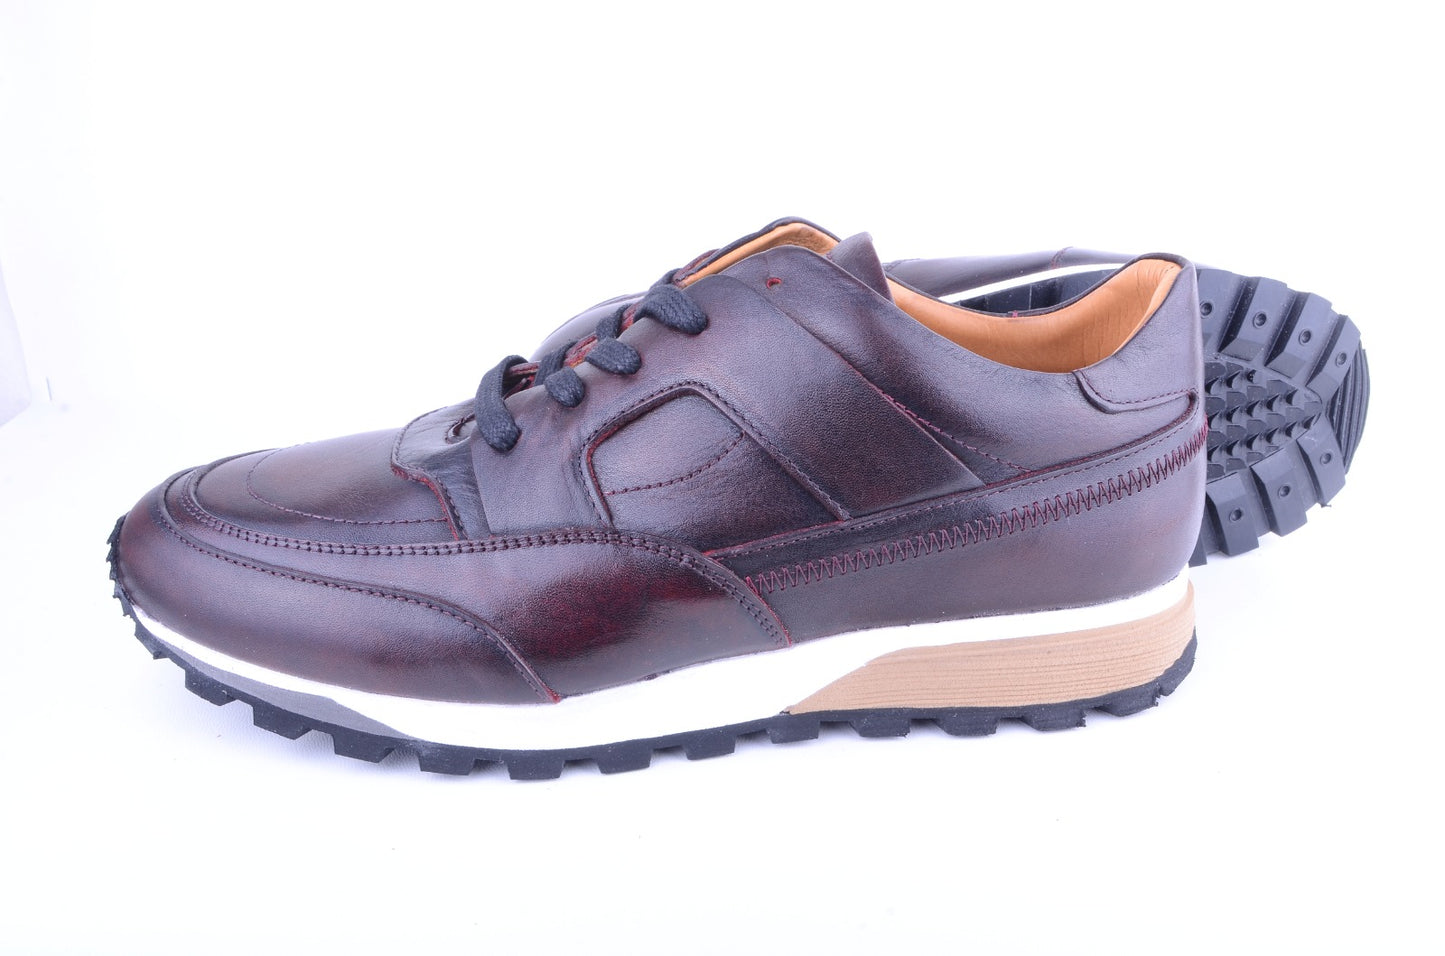 Pelle Line- 5752 Full Leather fashion Sneaker- Burgundy